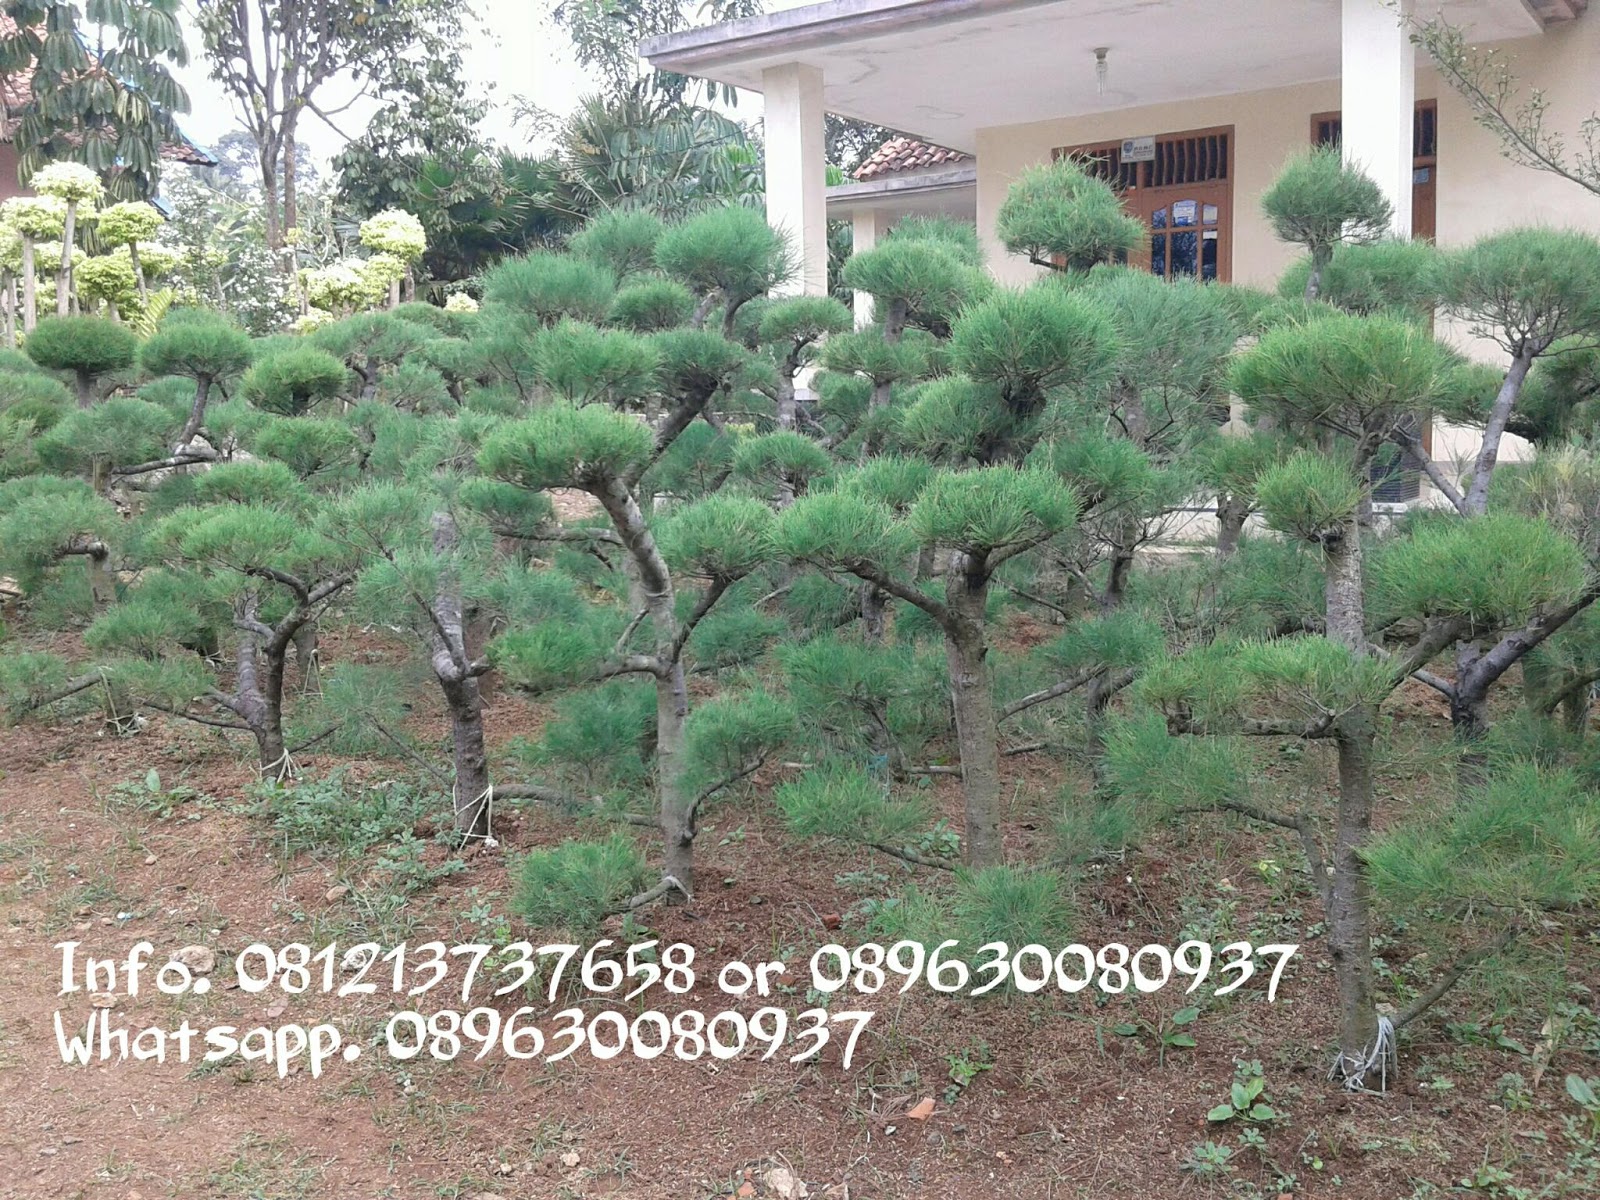 Jual Pohon Bonsai Cemara Udang Tukang Taman Minimalis Murah Dan